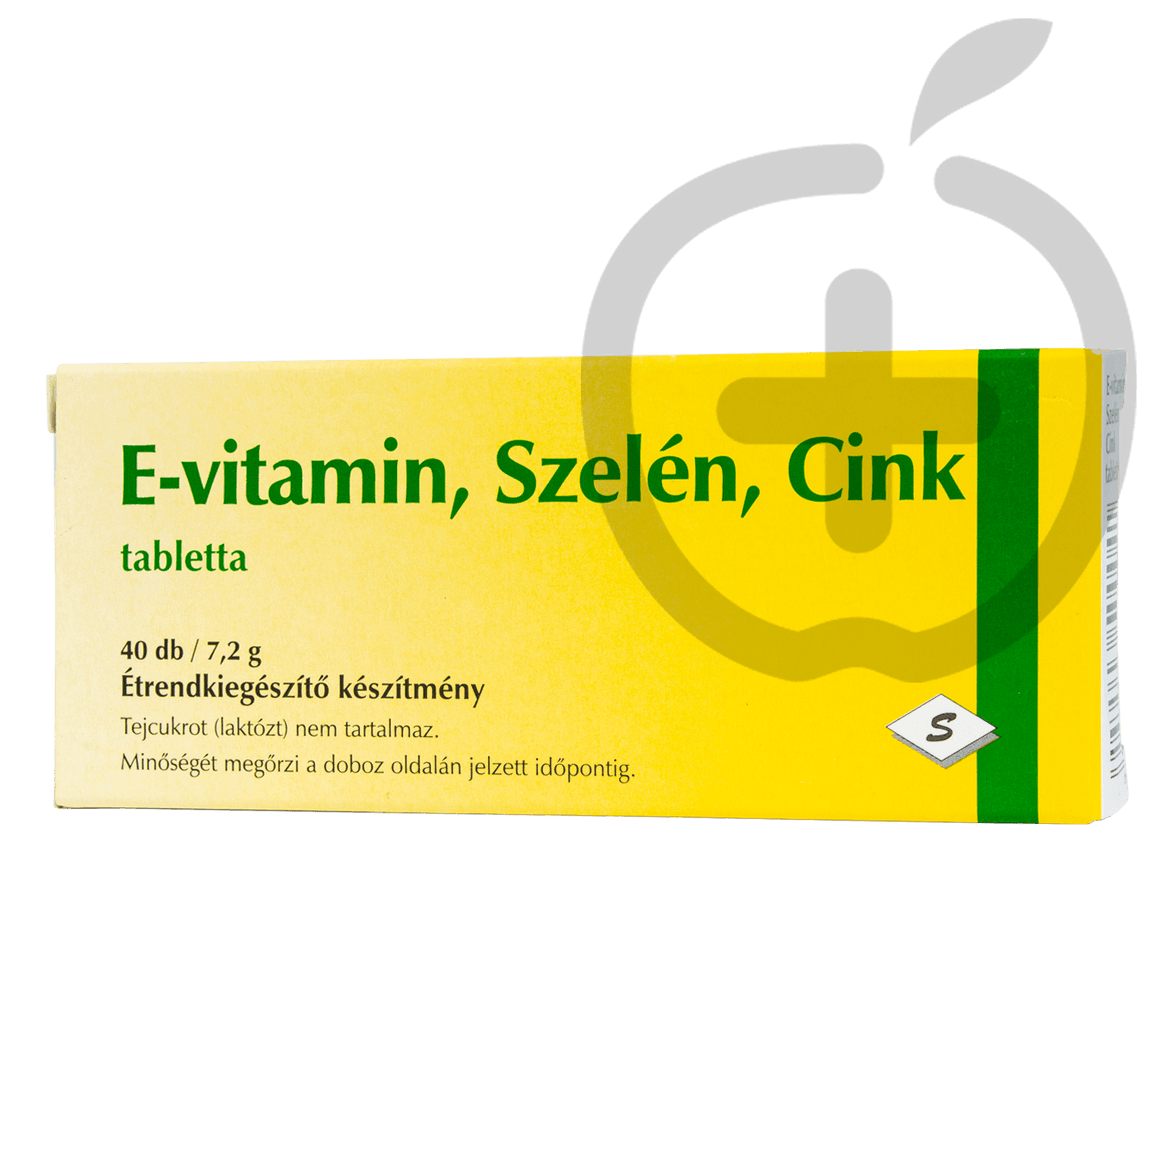 Selenium Pharma E-vitamin, Szelén, Cink tabletta